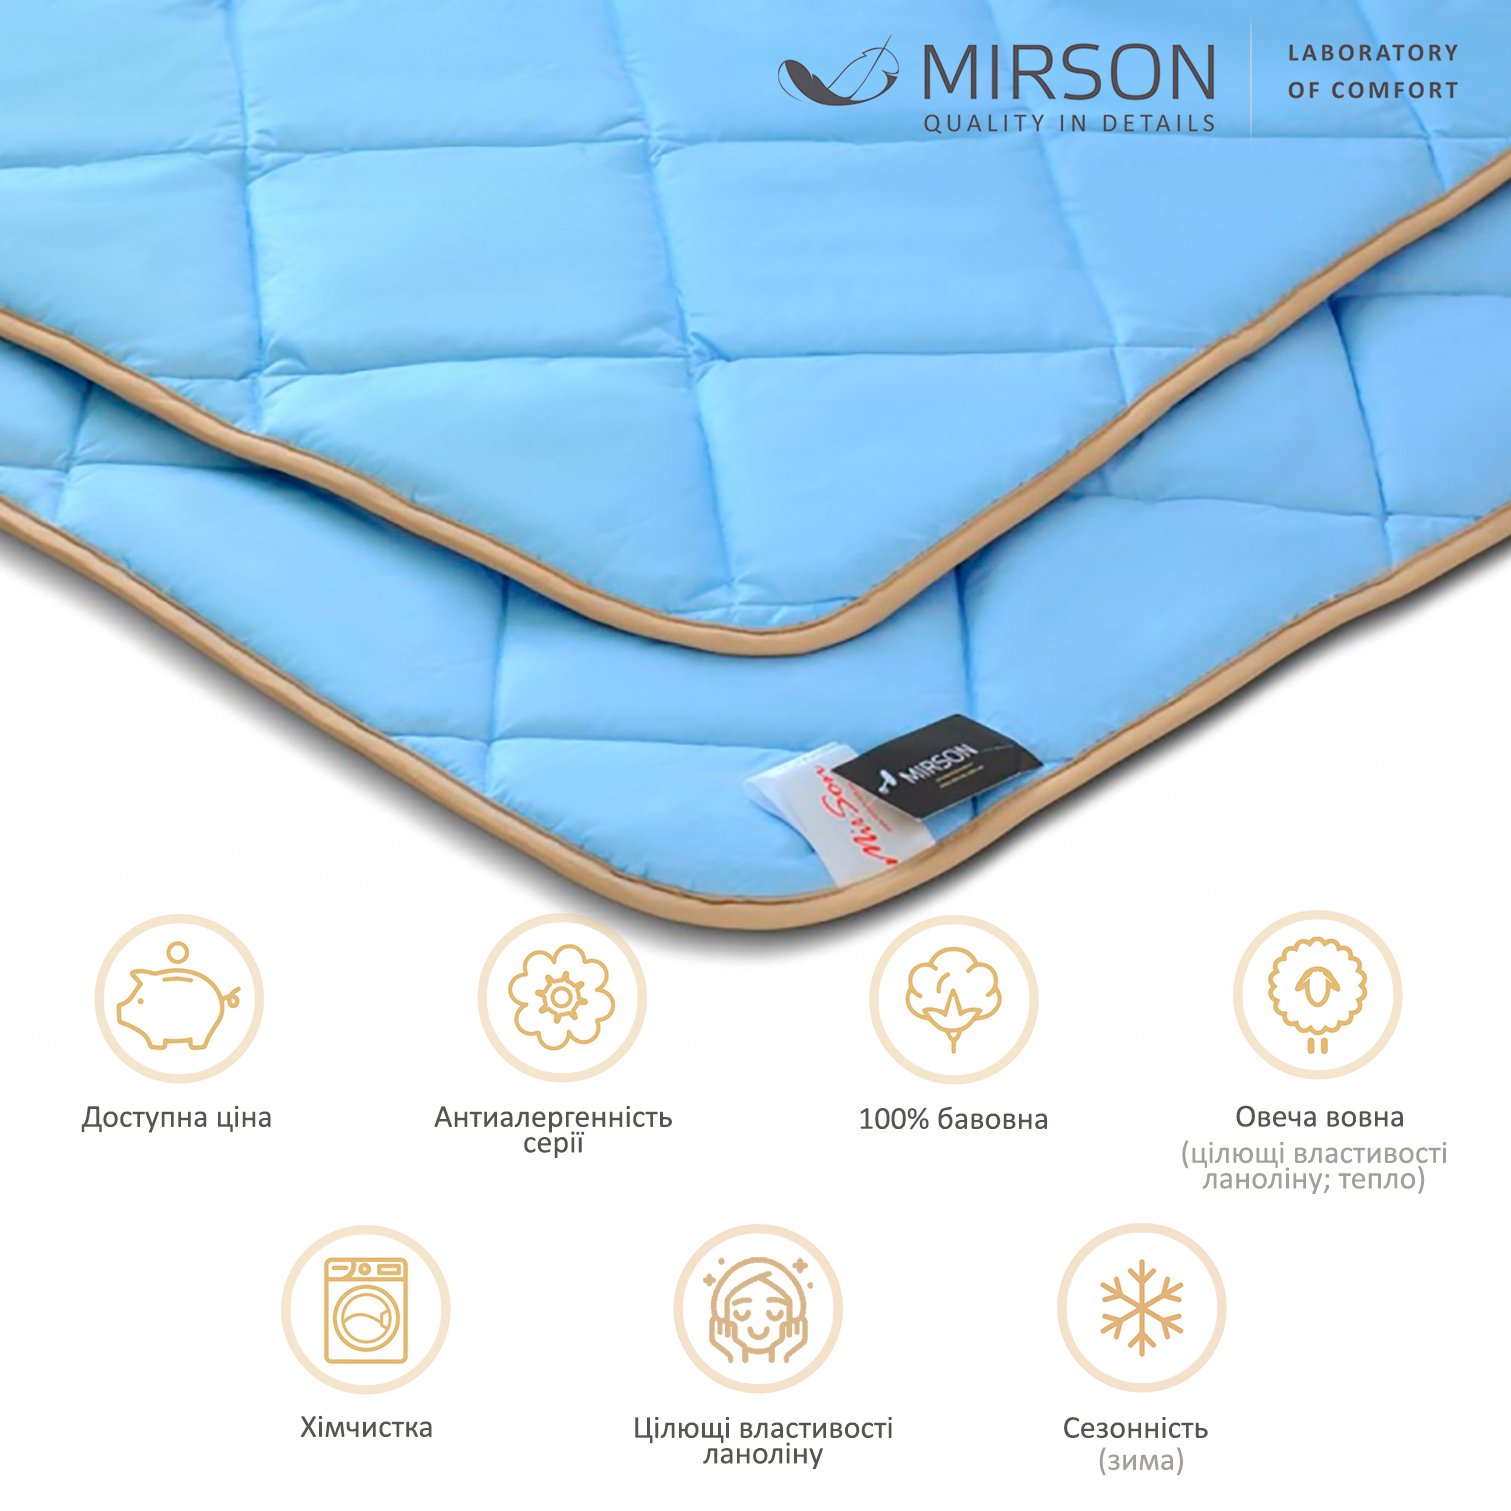 Одеяло шерстяное MirSon Valentino №0338, зимнее, 220x240 см, голубое - фото 5